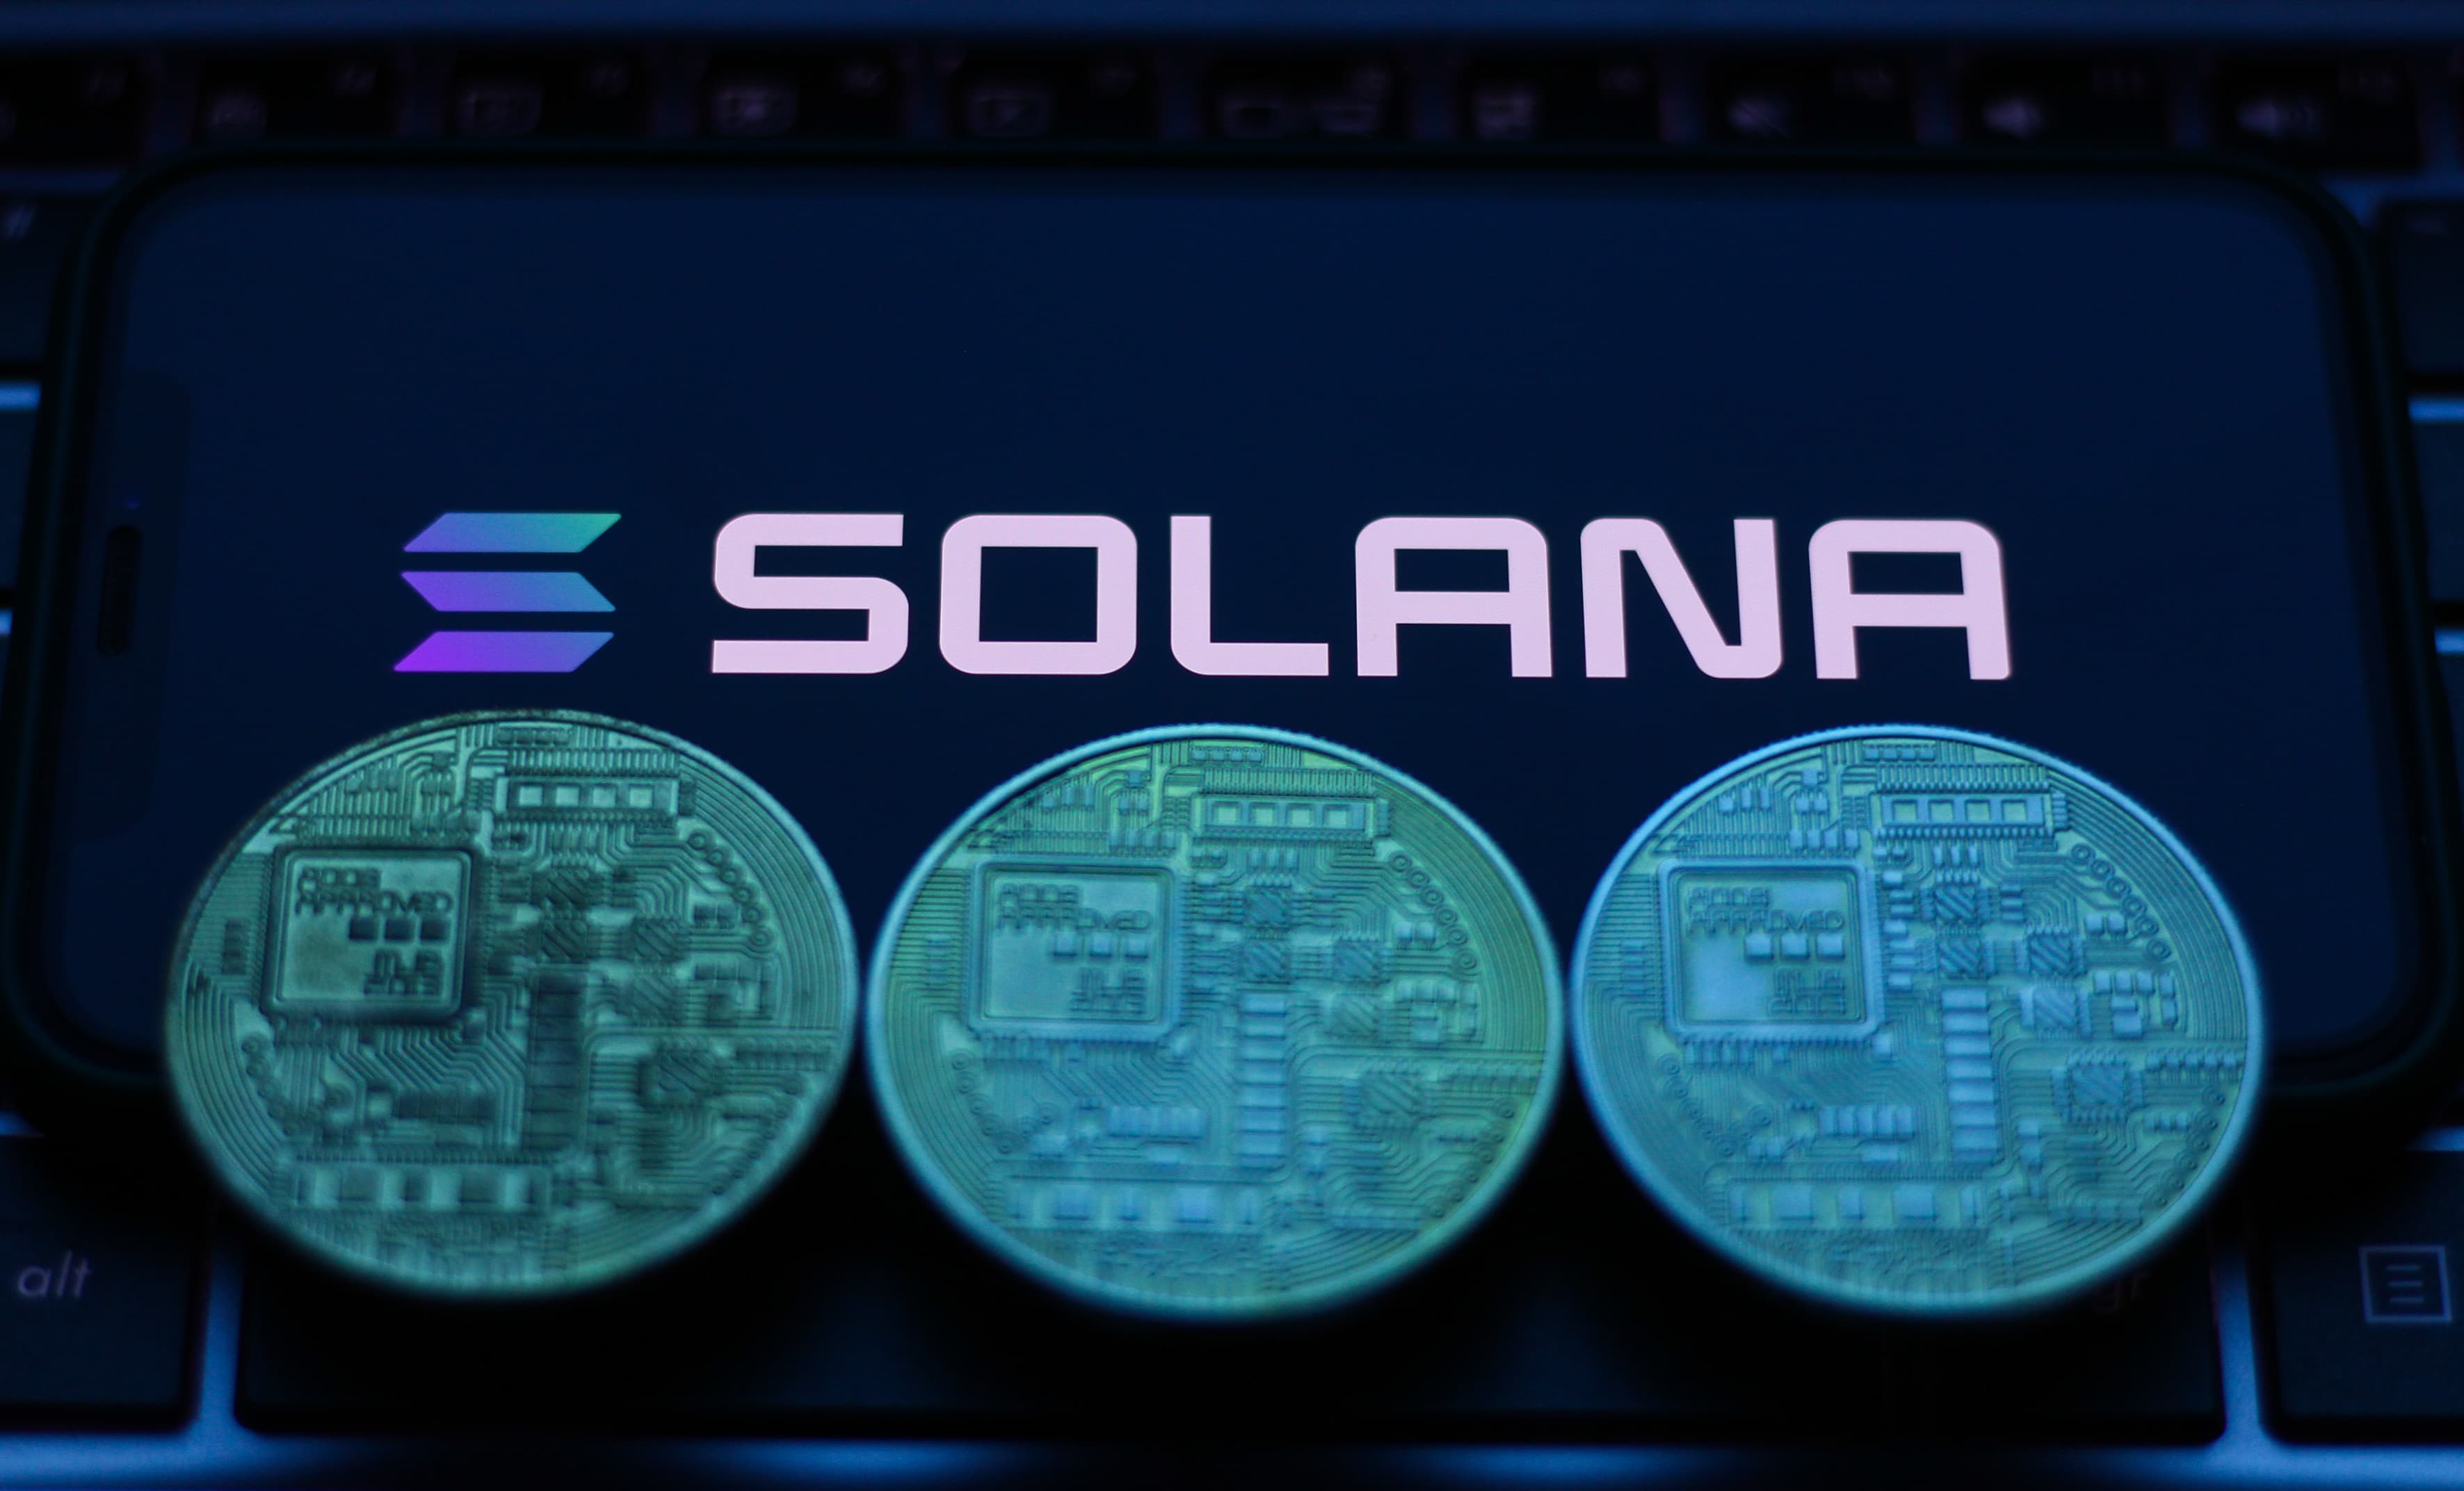 ارتفعت قيمة “سولانا” وسط ارتفاع العملات البديلة، حيث تضاعف سعرها ثلاث مرات تقريبًا خلال الشهر الماضي